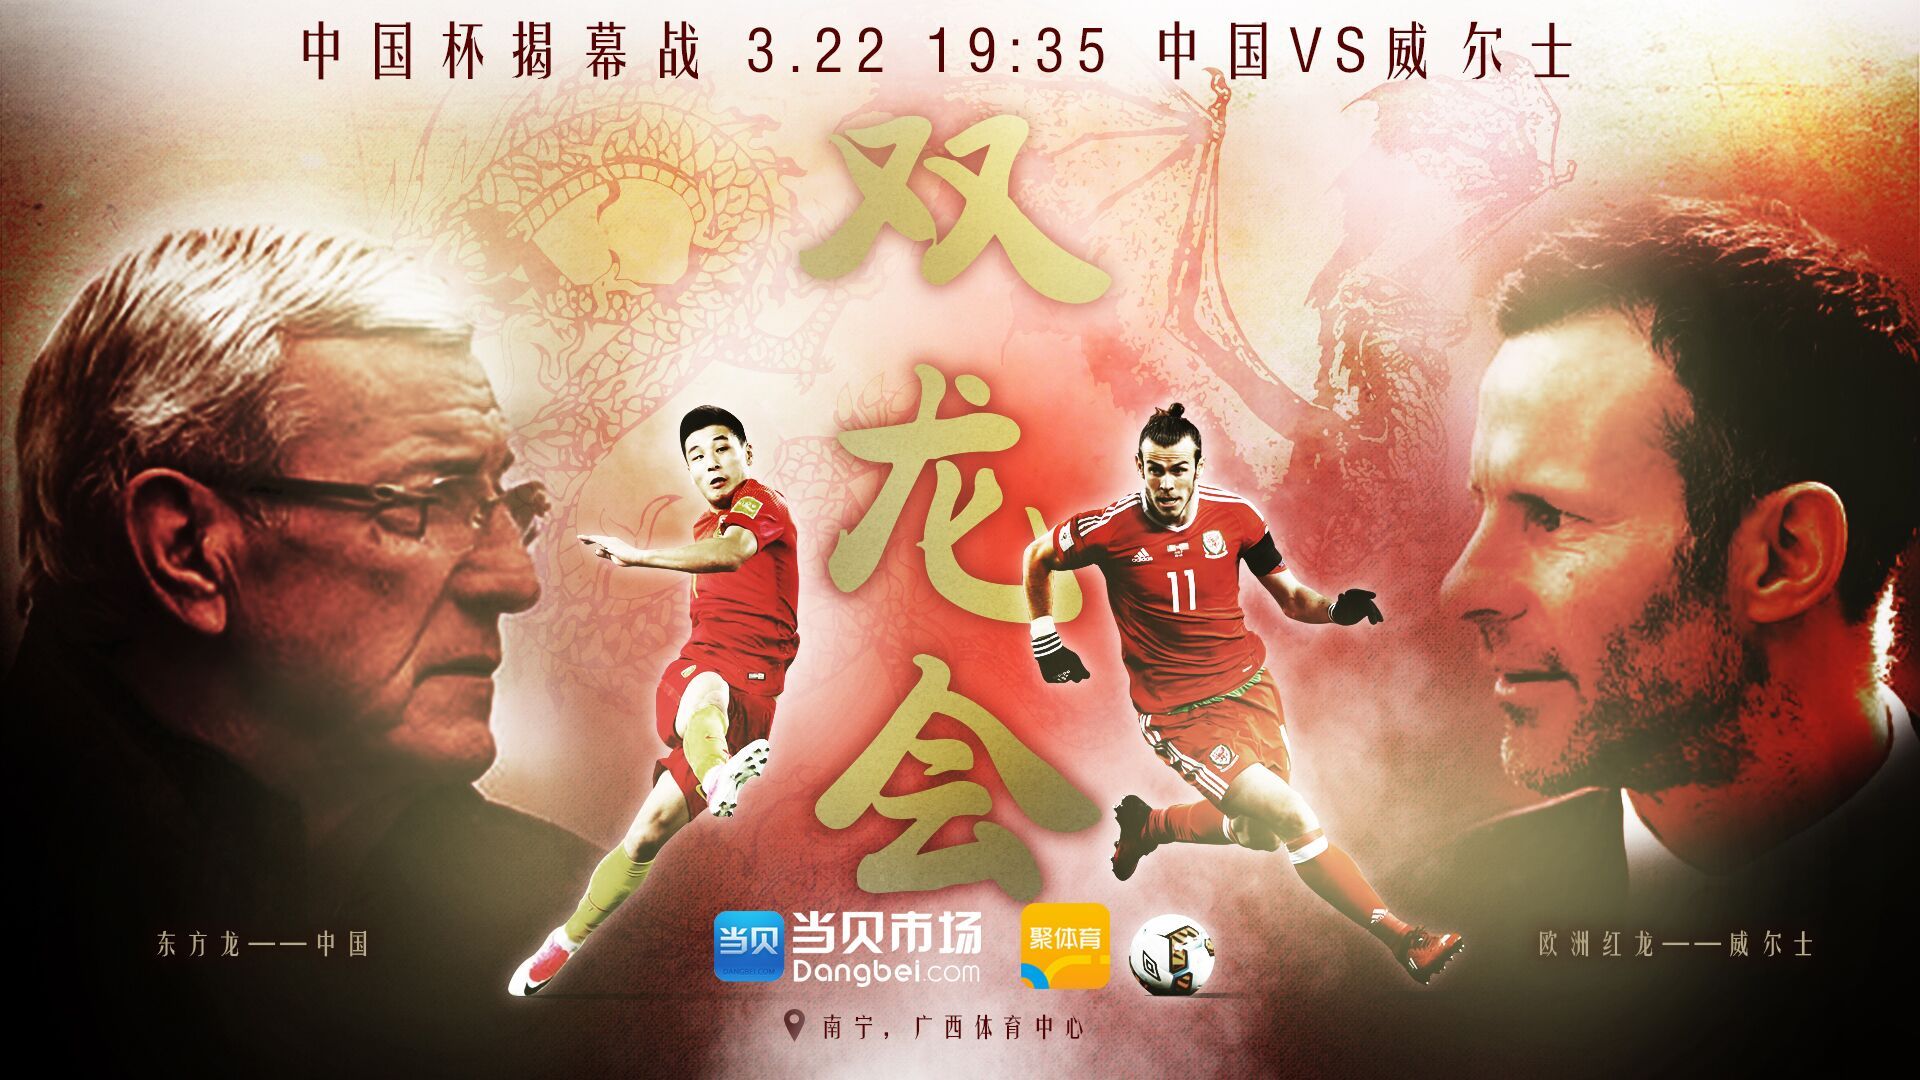 2018中国杯今日开赛,当贝市场携手CIBN聚体育